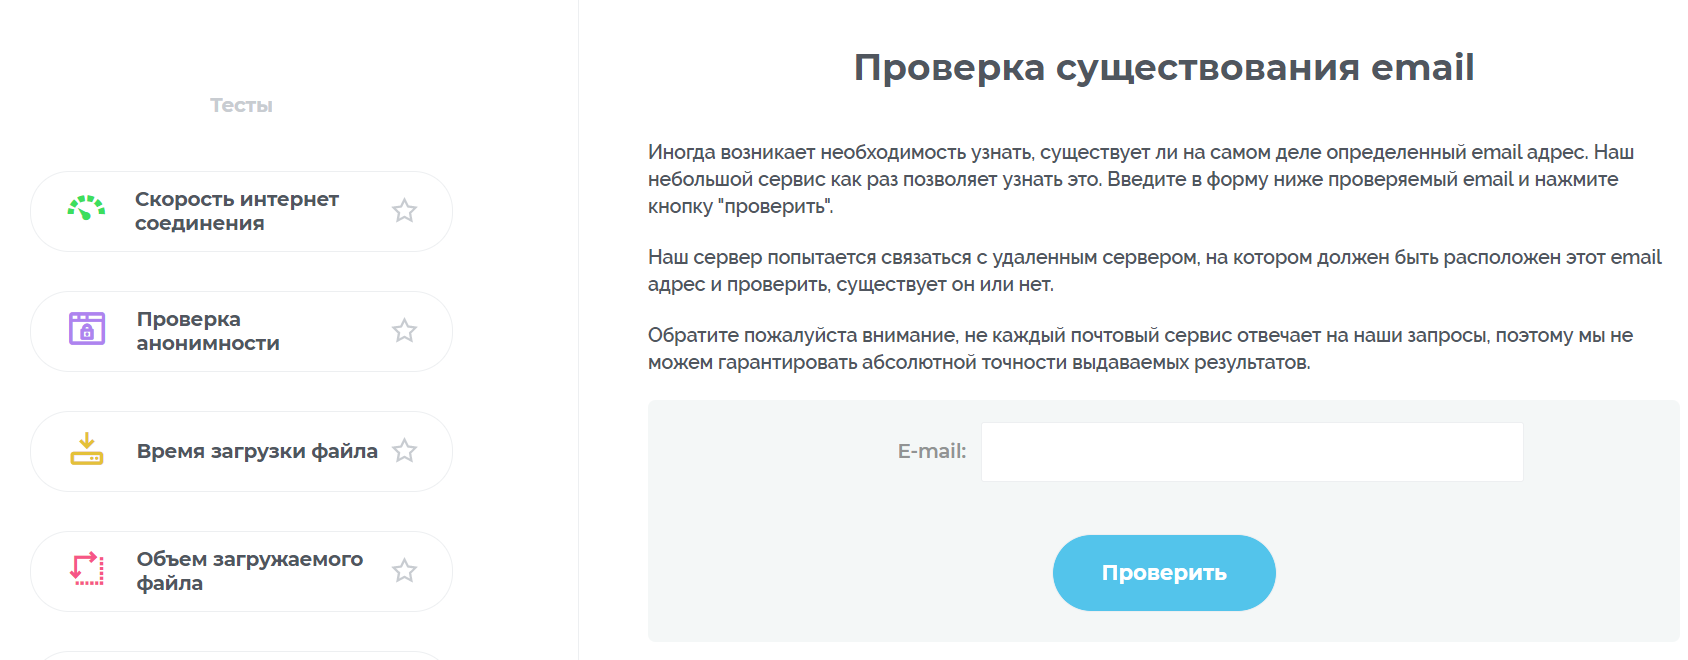 Топ инструментов инструментов для менеджера по продажам в IT: 2ip.ru - cервис для проверки корректности почты